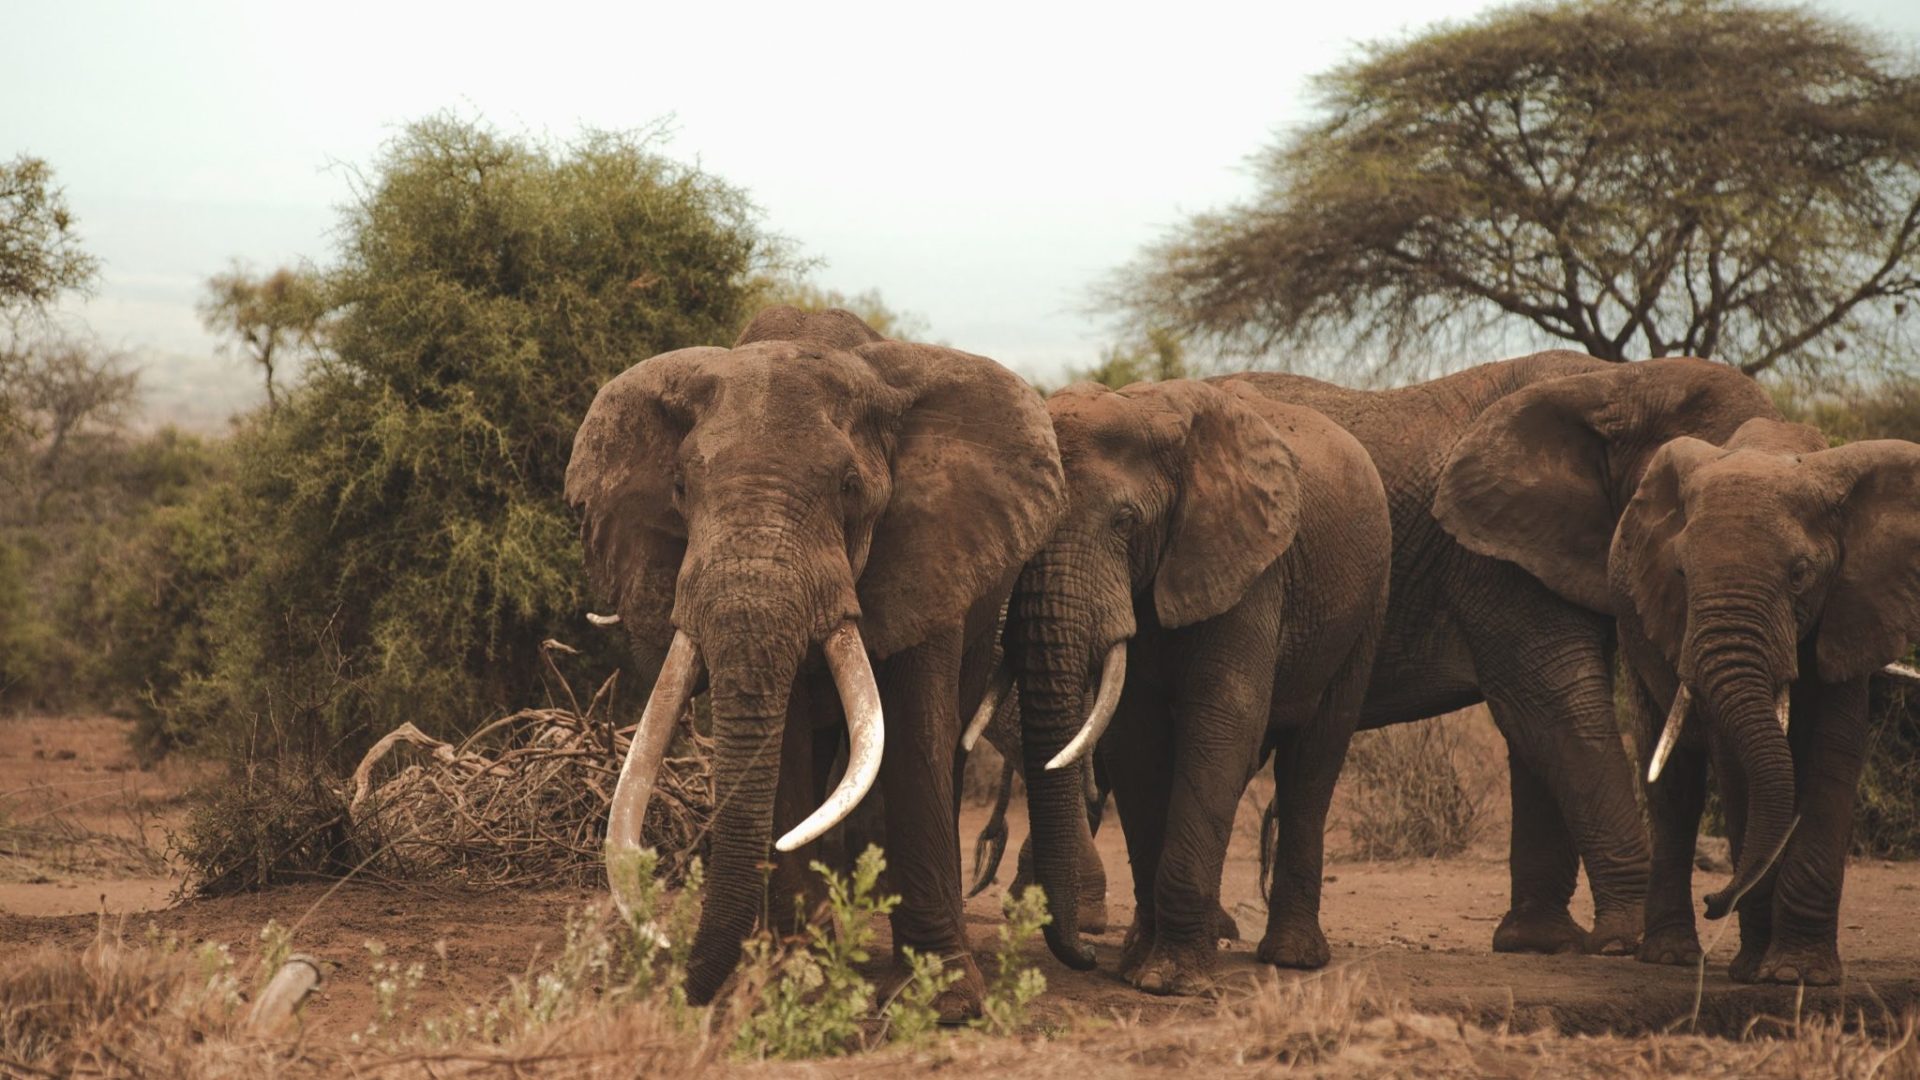 Tawi Amboseli Kenya Elephants